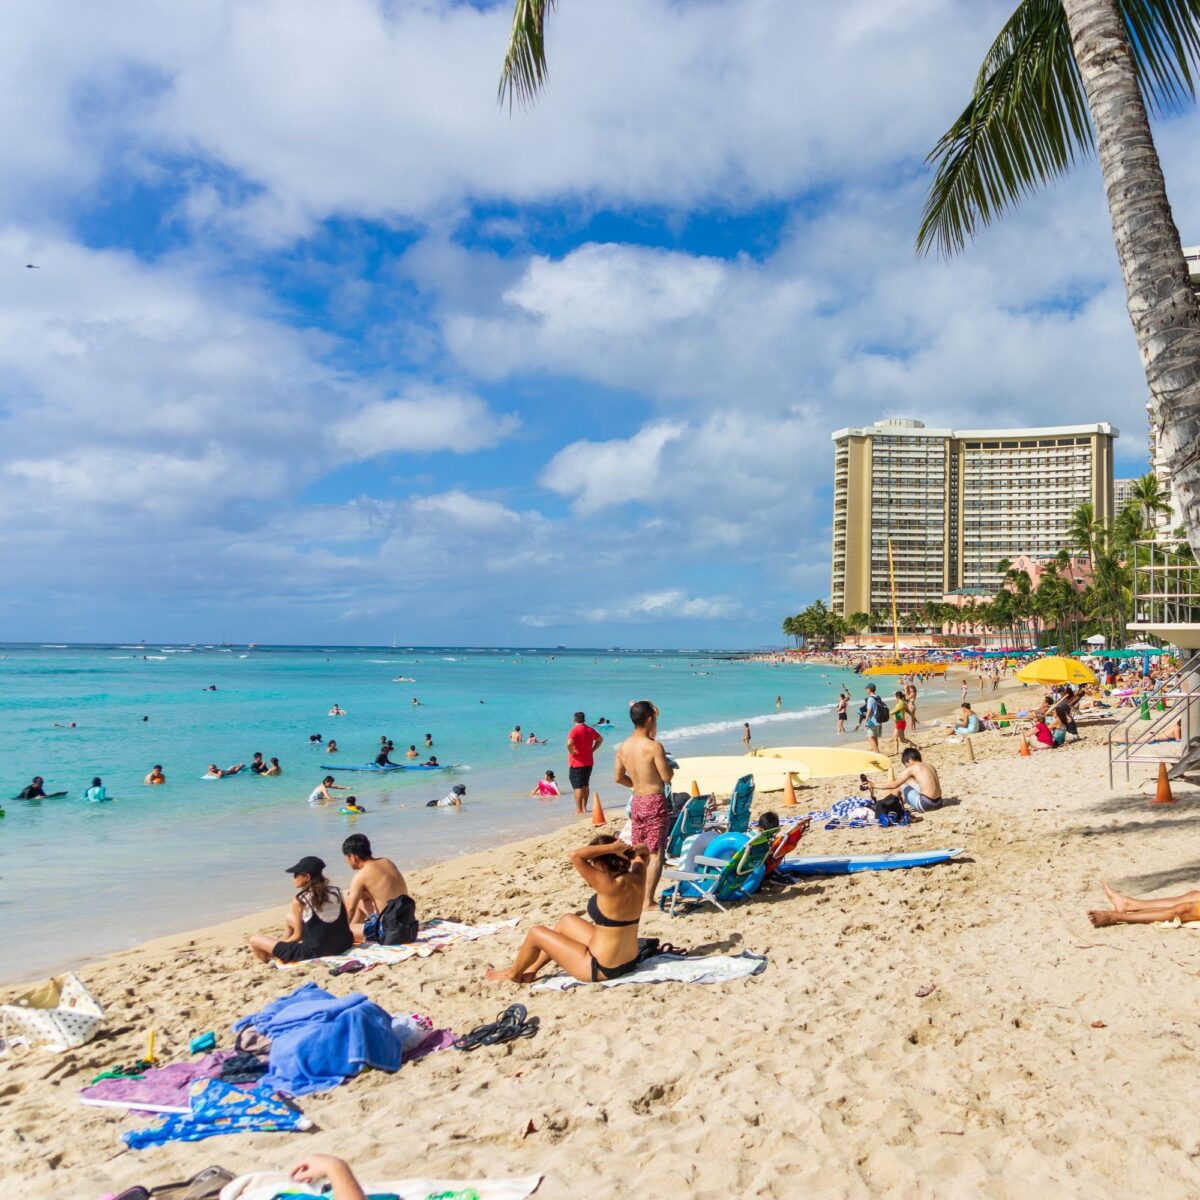  Nuotare nell'Oceano Pacifico alle Hawaii, ecco la spiaggia di Waikiki